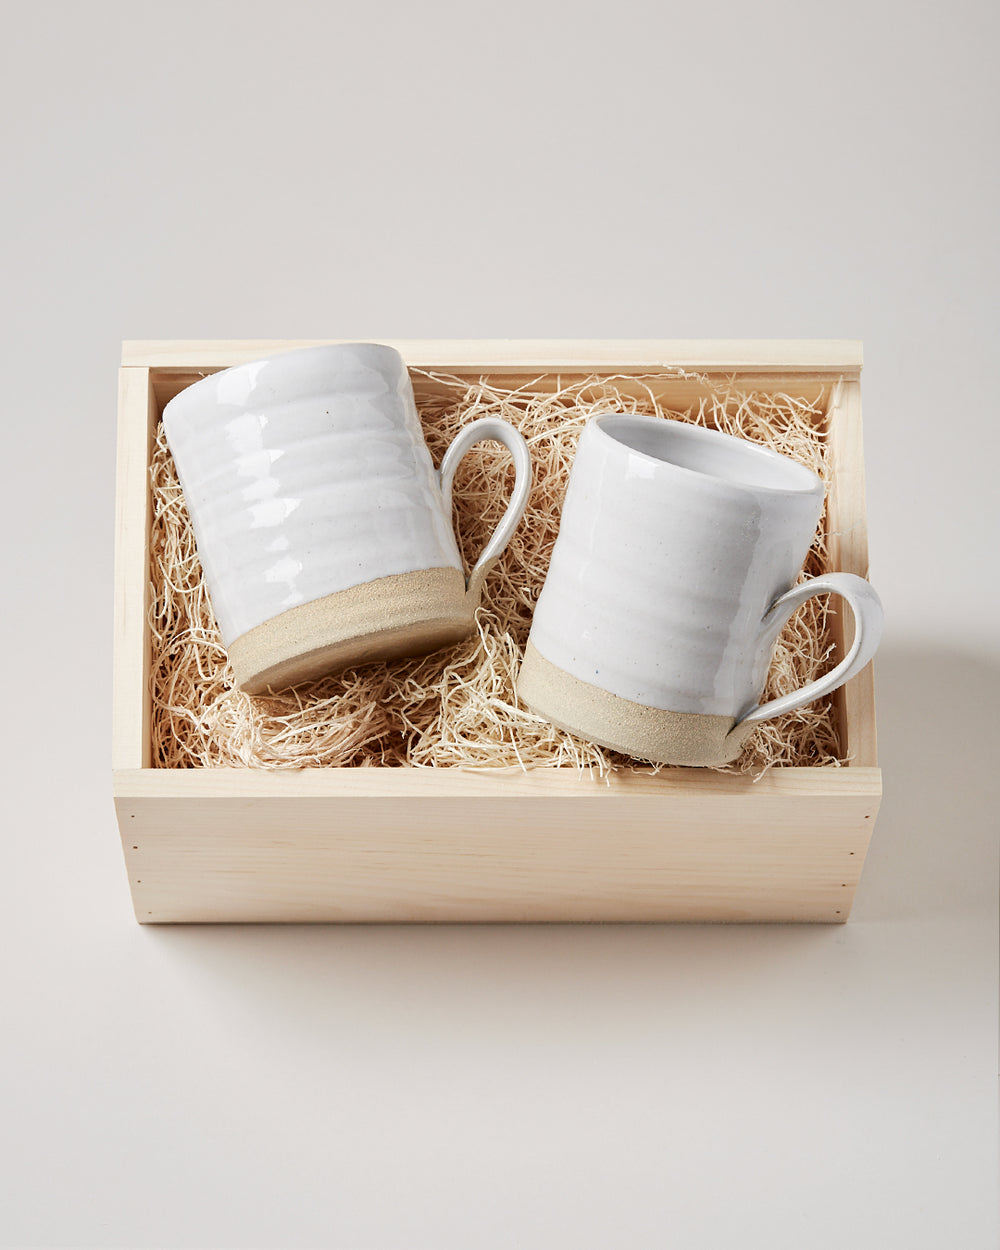 Silo Mug Gift Set